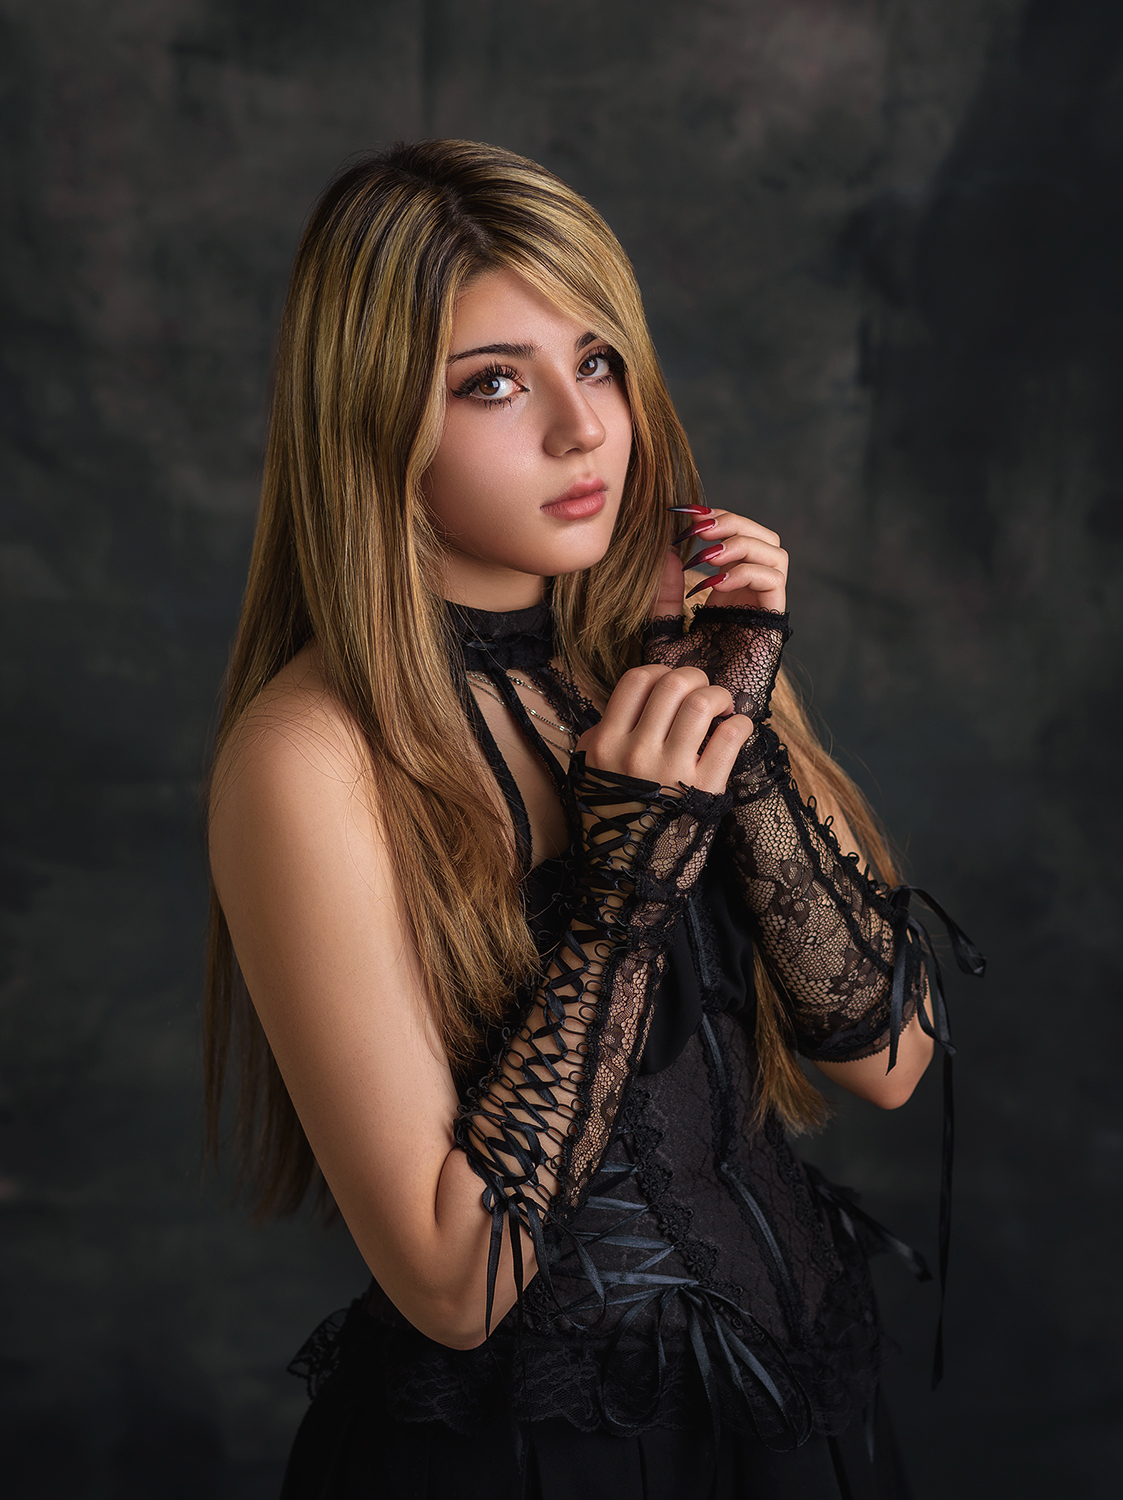 Ali Shomali Women Blonde Makeup Black Dress Lace Gloves 1123x1500